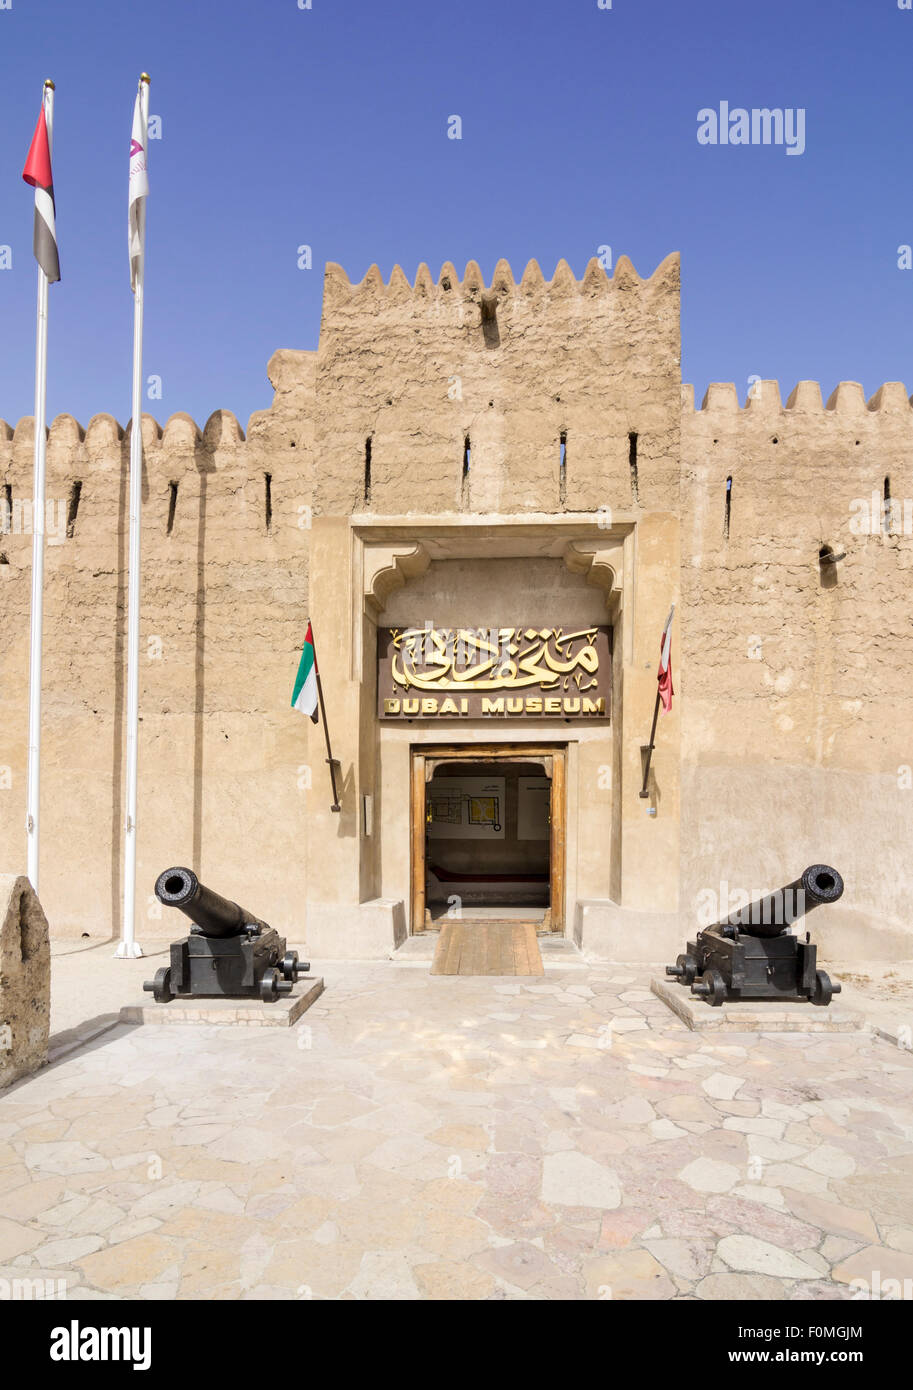 Dubai Museum entrance at the Al Fahidi Fort, Bur Dubai, Dubai, UAE Stock Photo